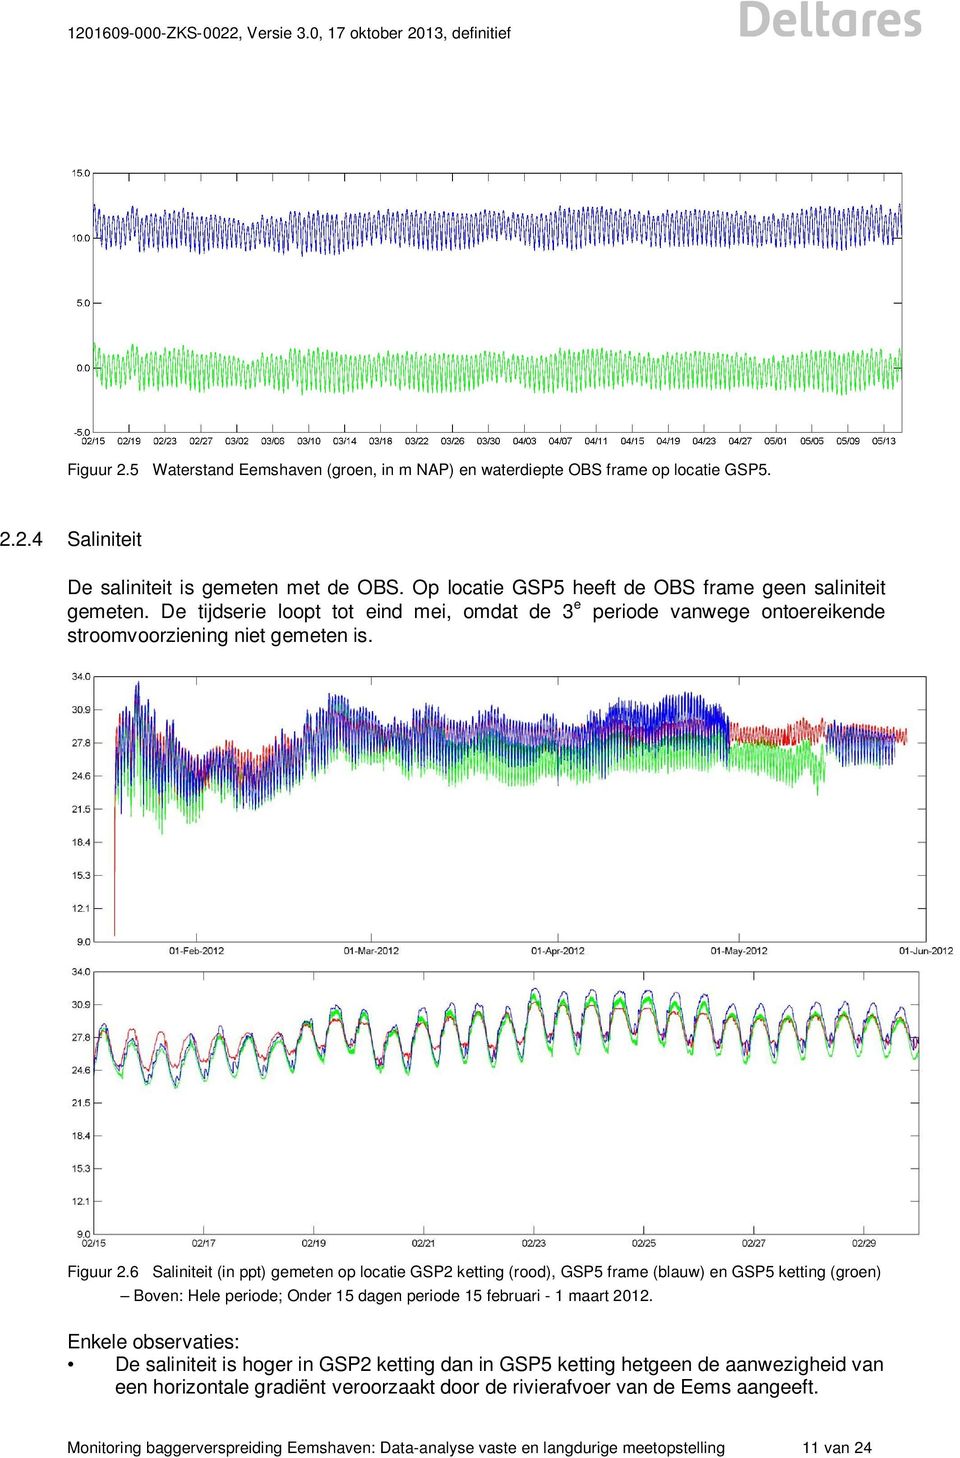 6 Saliniteit (in ppt) gemeten op locatie GSP2 ketting (rood), GSP5 frame (blauw) en GSP5 ketting (groen) Boven: Hele periode; Onder 15 dagen periode 15 februari - 1 maart 2012.